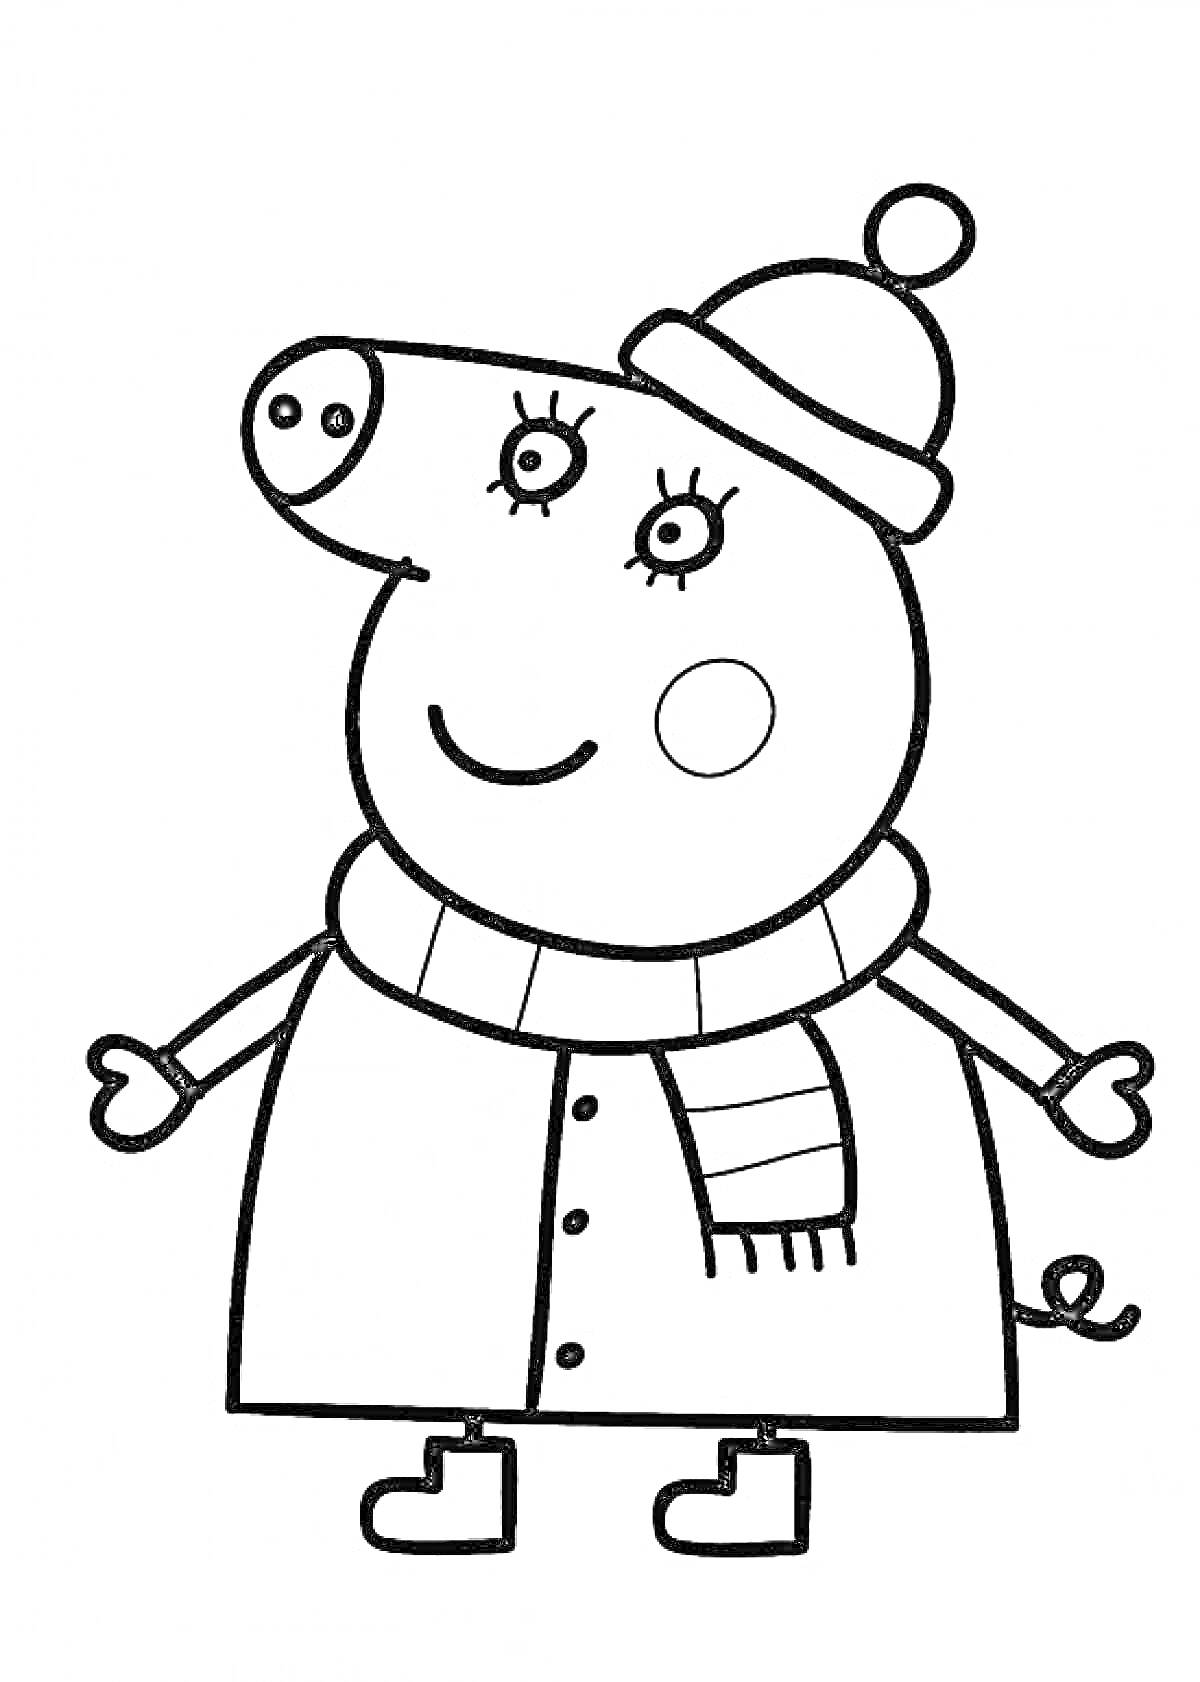 Раскраска Свинка Пеппа в зимней одежде с шапкой и шарфом